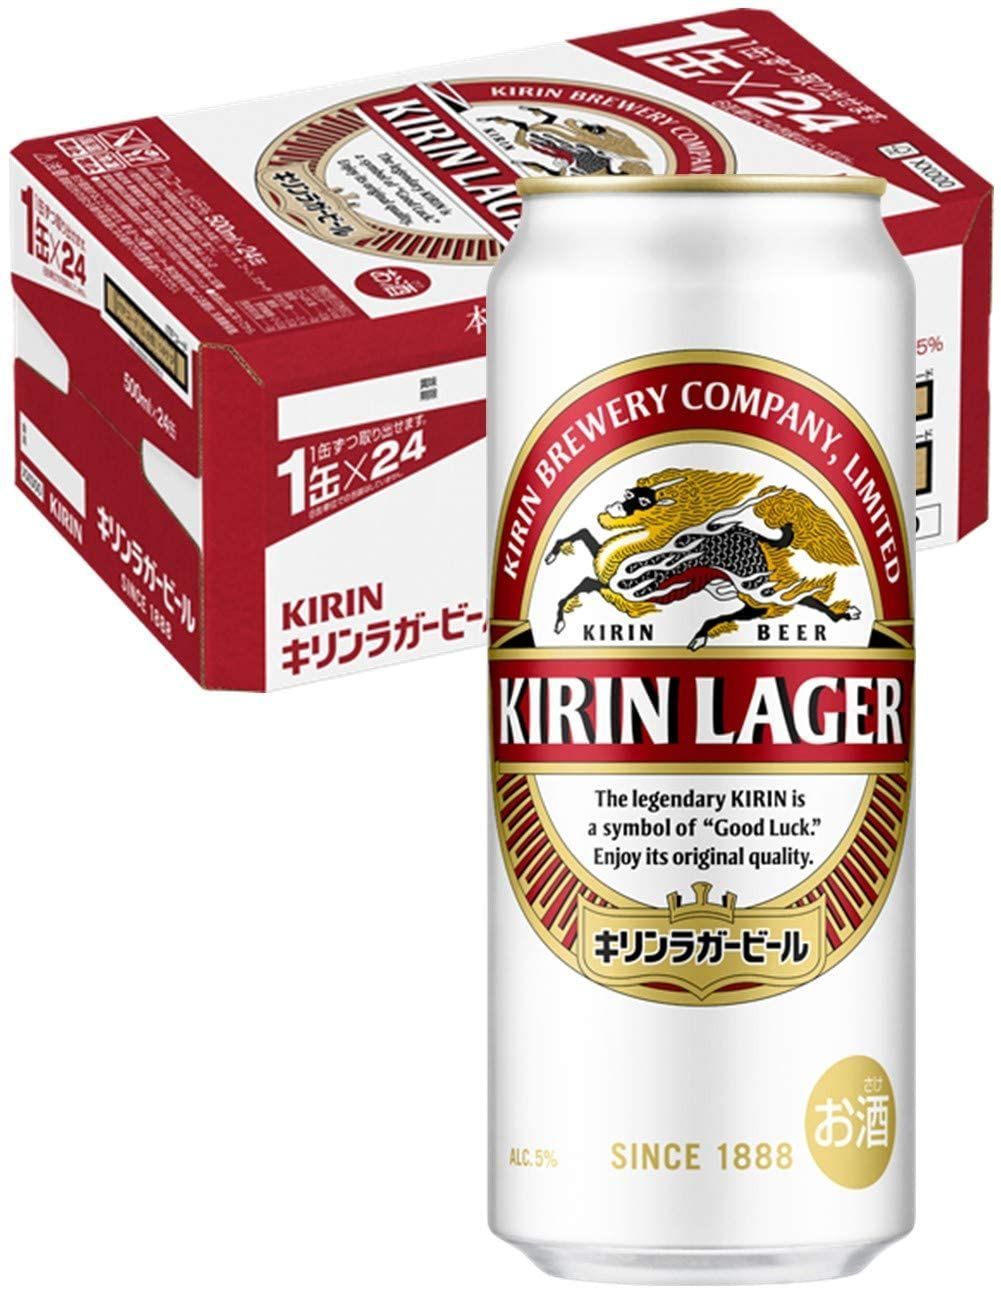 キリン ラガービール 500ml×24本 library.umsida.ac.id